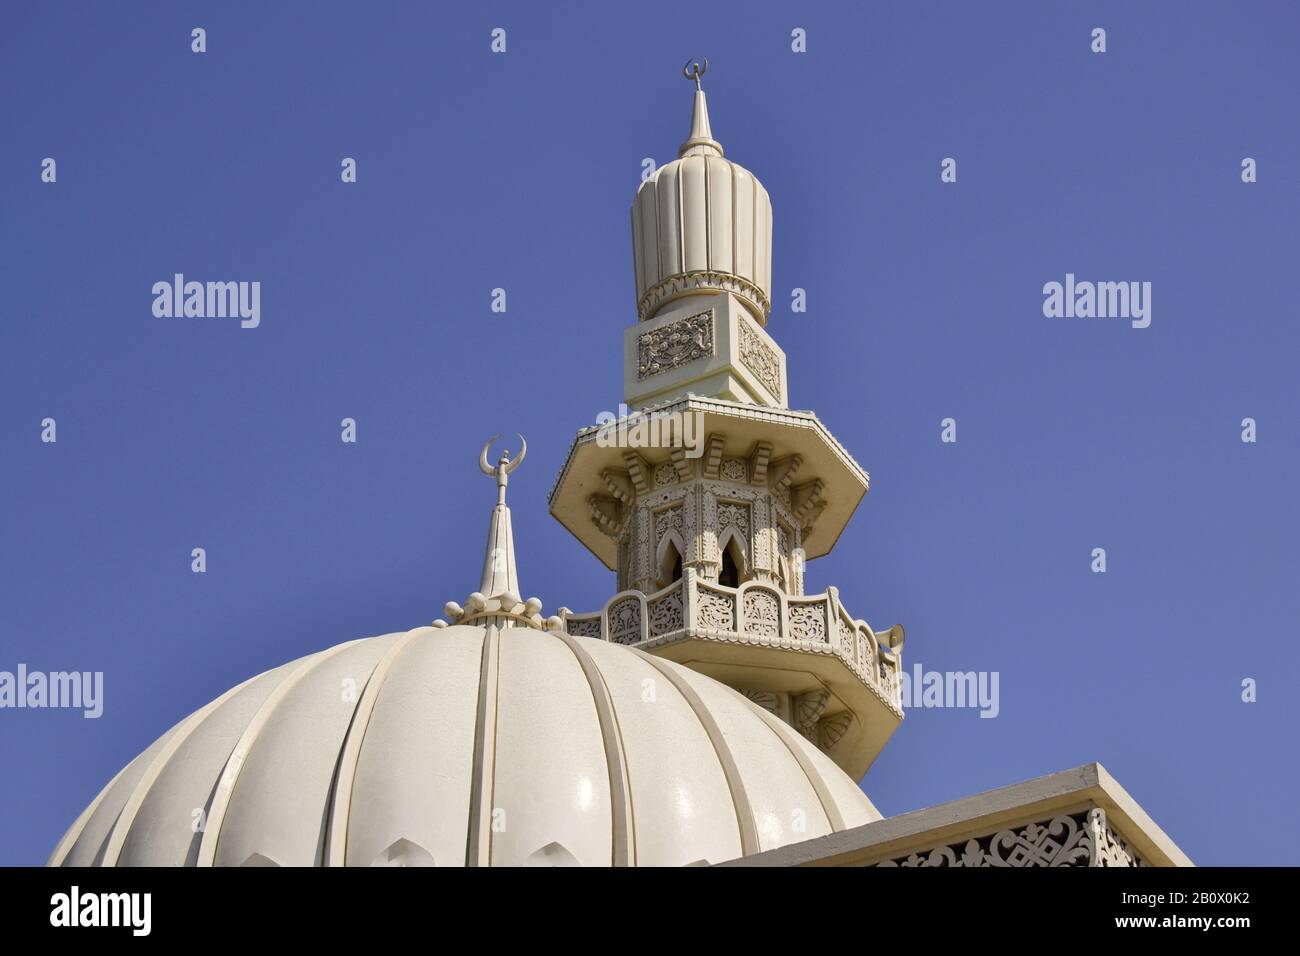 Minarett einer Moschee, Corniche Street, Emirat Sharjah, Vereinigte Arabische Emirate, Arabische Halbinsel, Naher Osten, Stockfoto